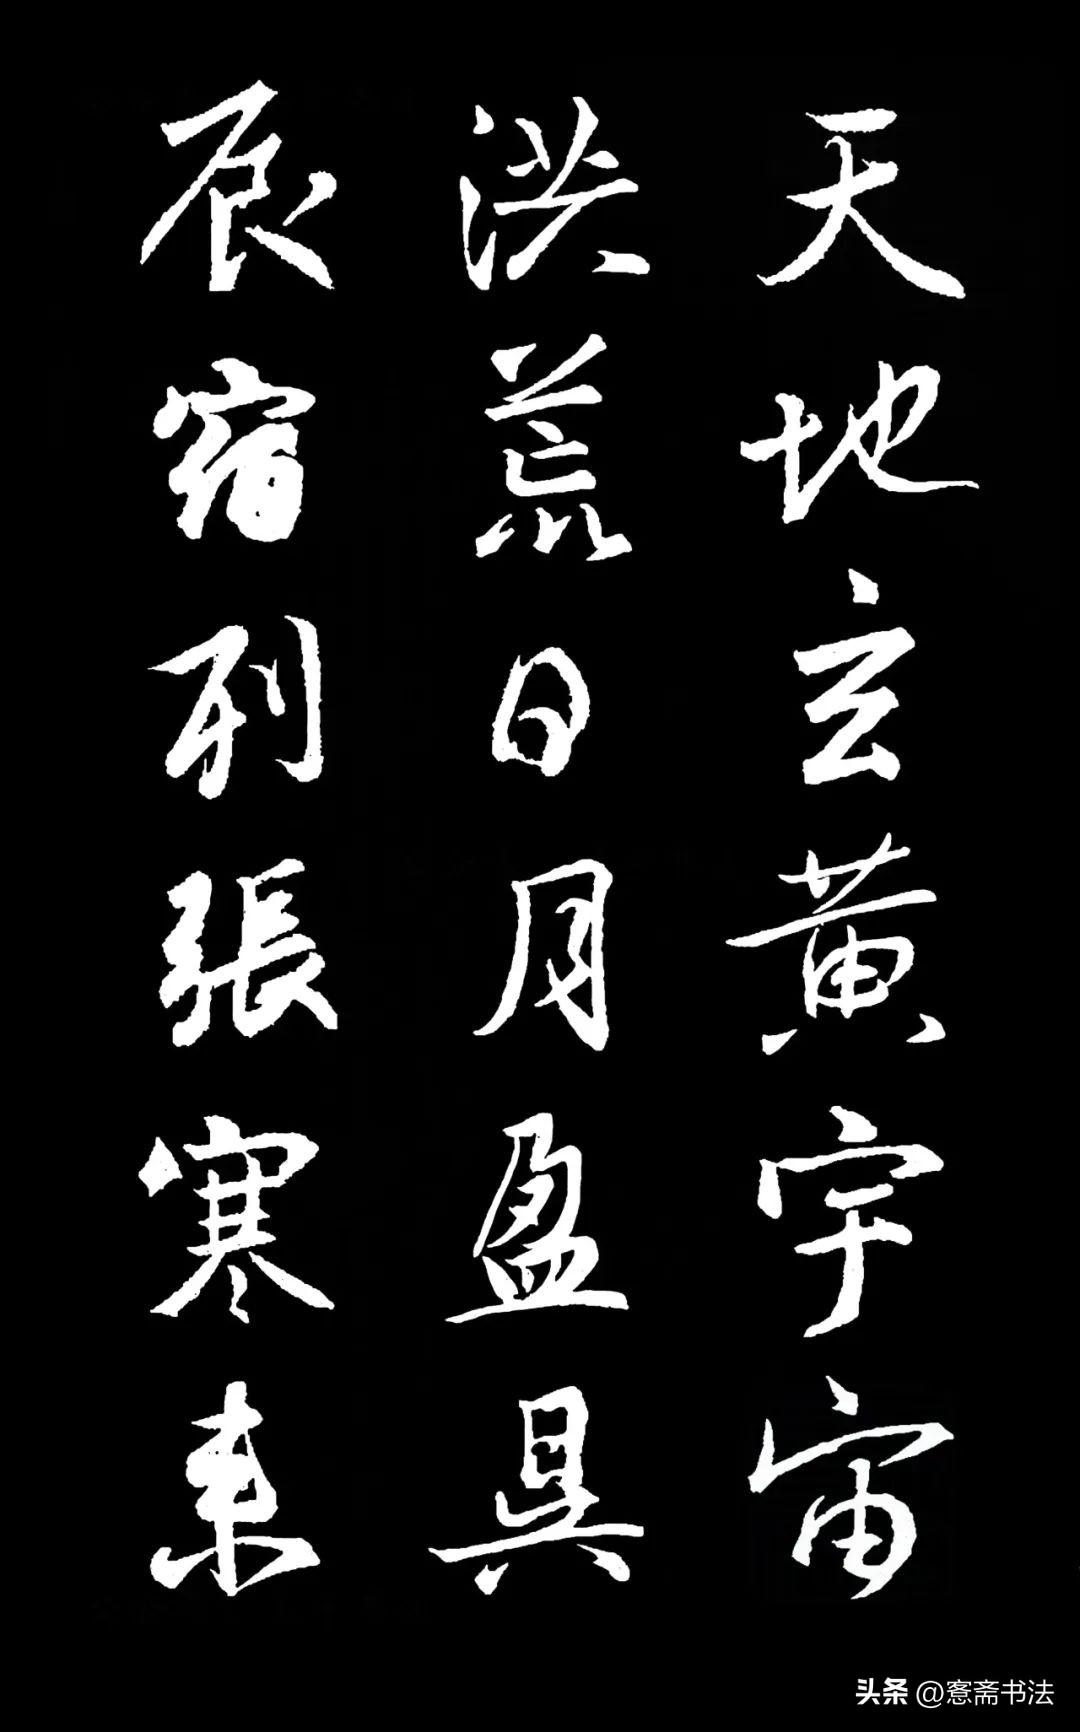 中國歷代書法名家作品集字:王羲之《集字千字文》1000個行書字體